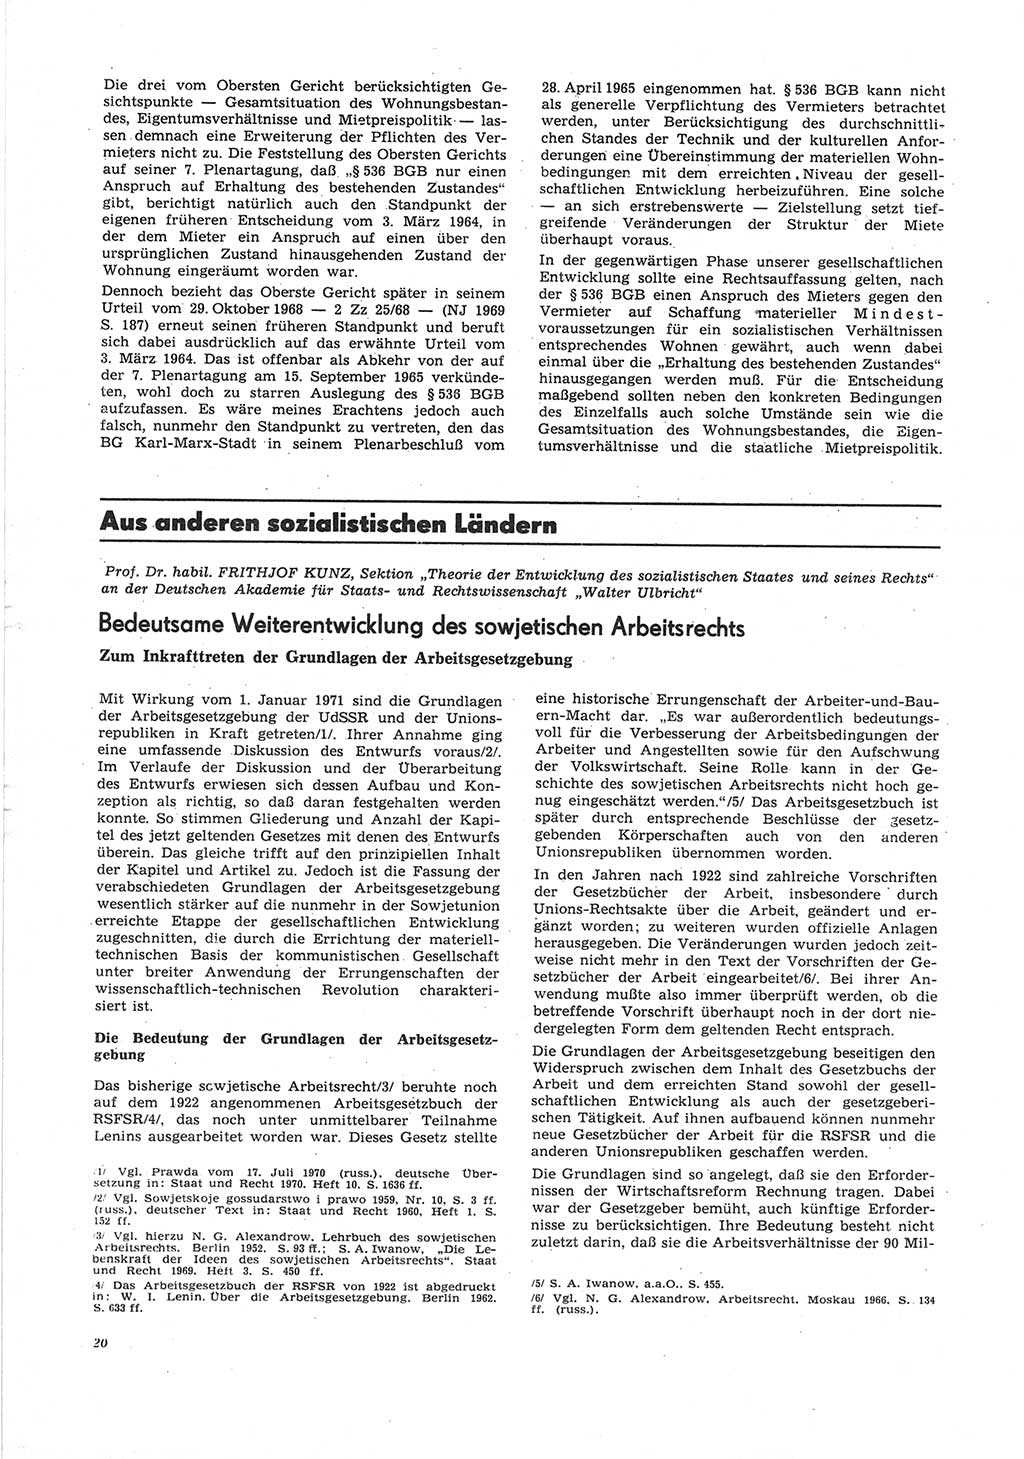 Neue Justiz (NJ), Zeitschrift für Recht und Rechtswissenschaft [Deutsche Demokratische Republik (DDR)], 25. Jahrgang 1971, Seite 20 (NJ DDR 1971, S. 20)